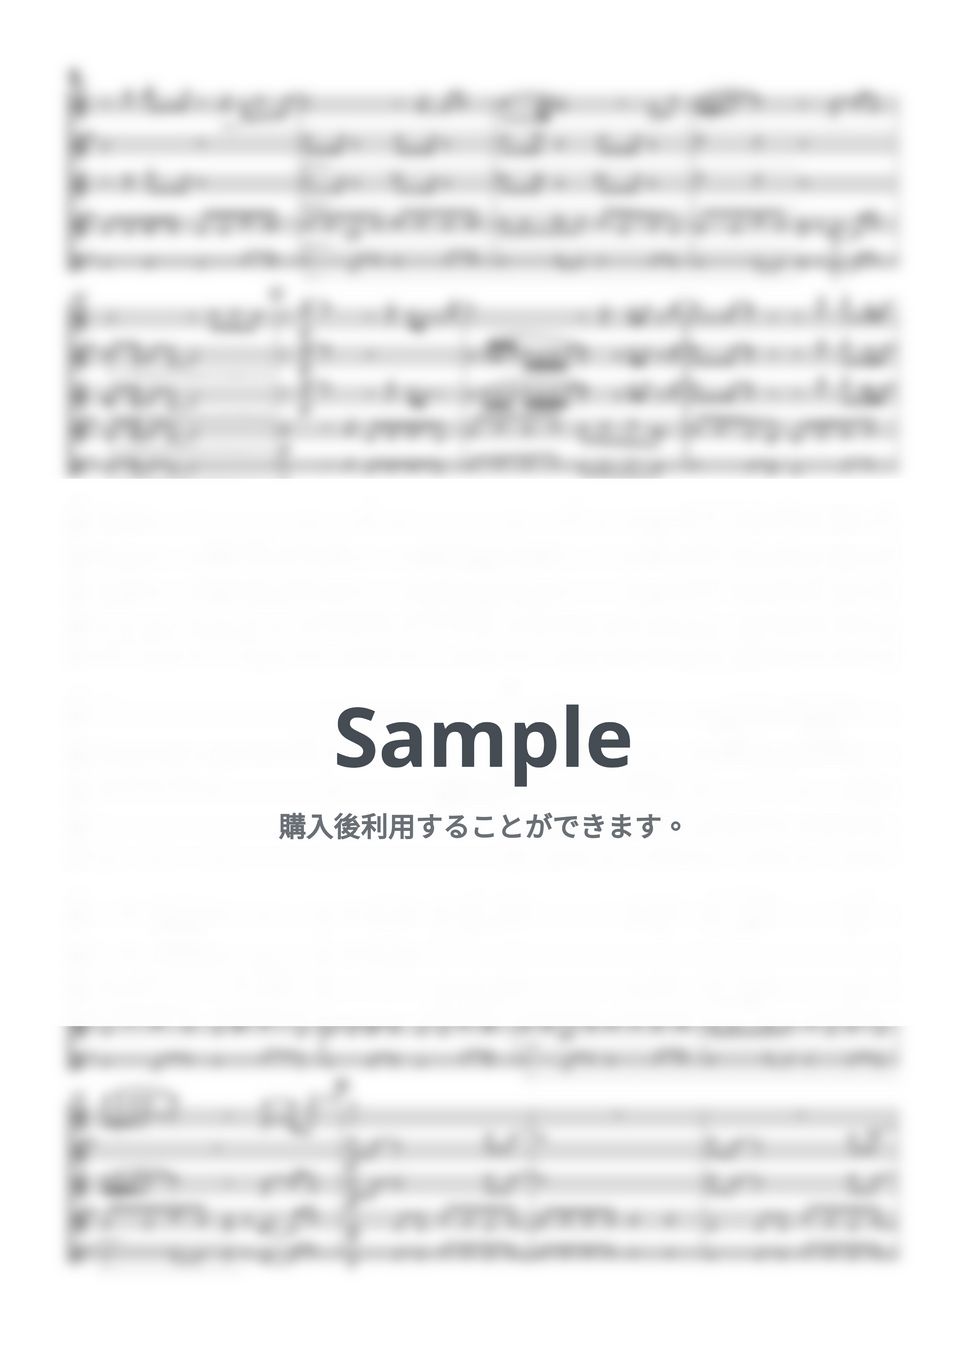 大野雄二 - ルパン三世のテーマ'80 (サックス四重奏 / Saxophone Quartet / パート譜付き) by Tawa